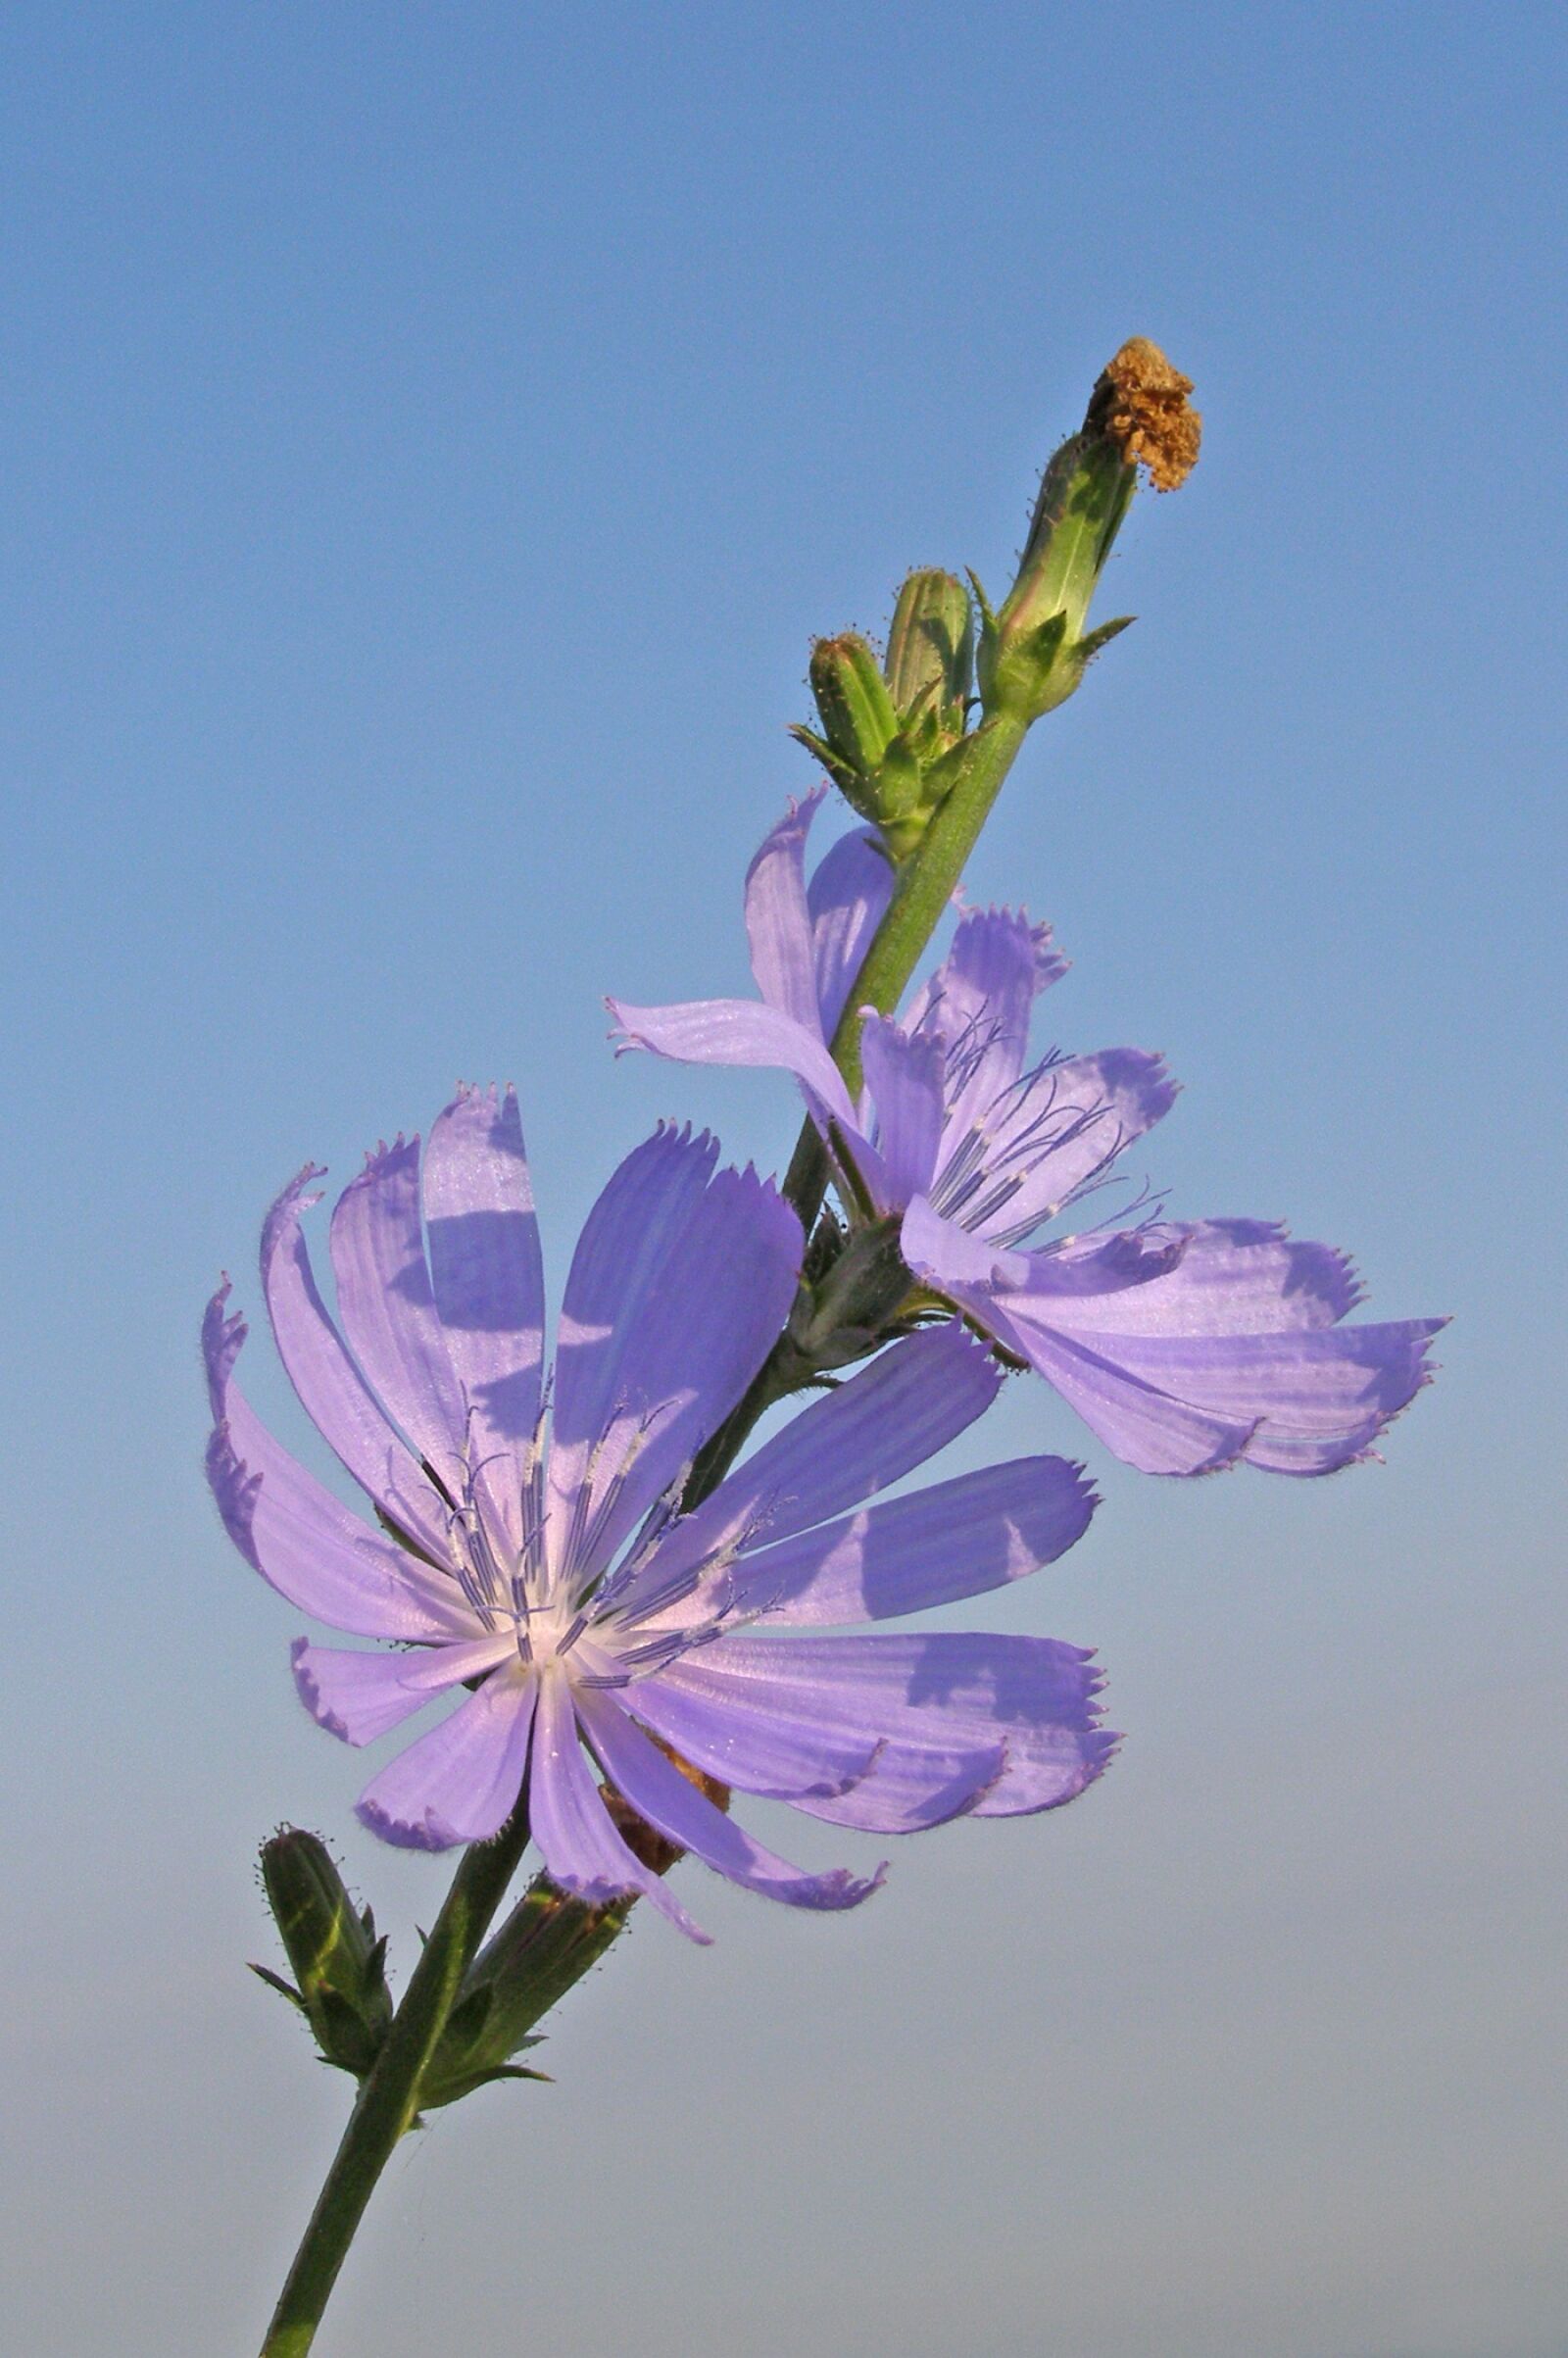 Olympus SP500UZ sample photo. Chicory, flower, blue photography